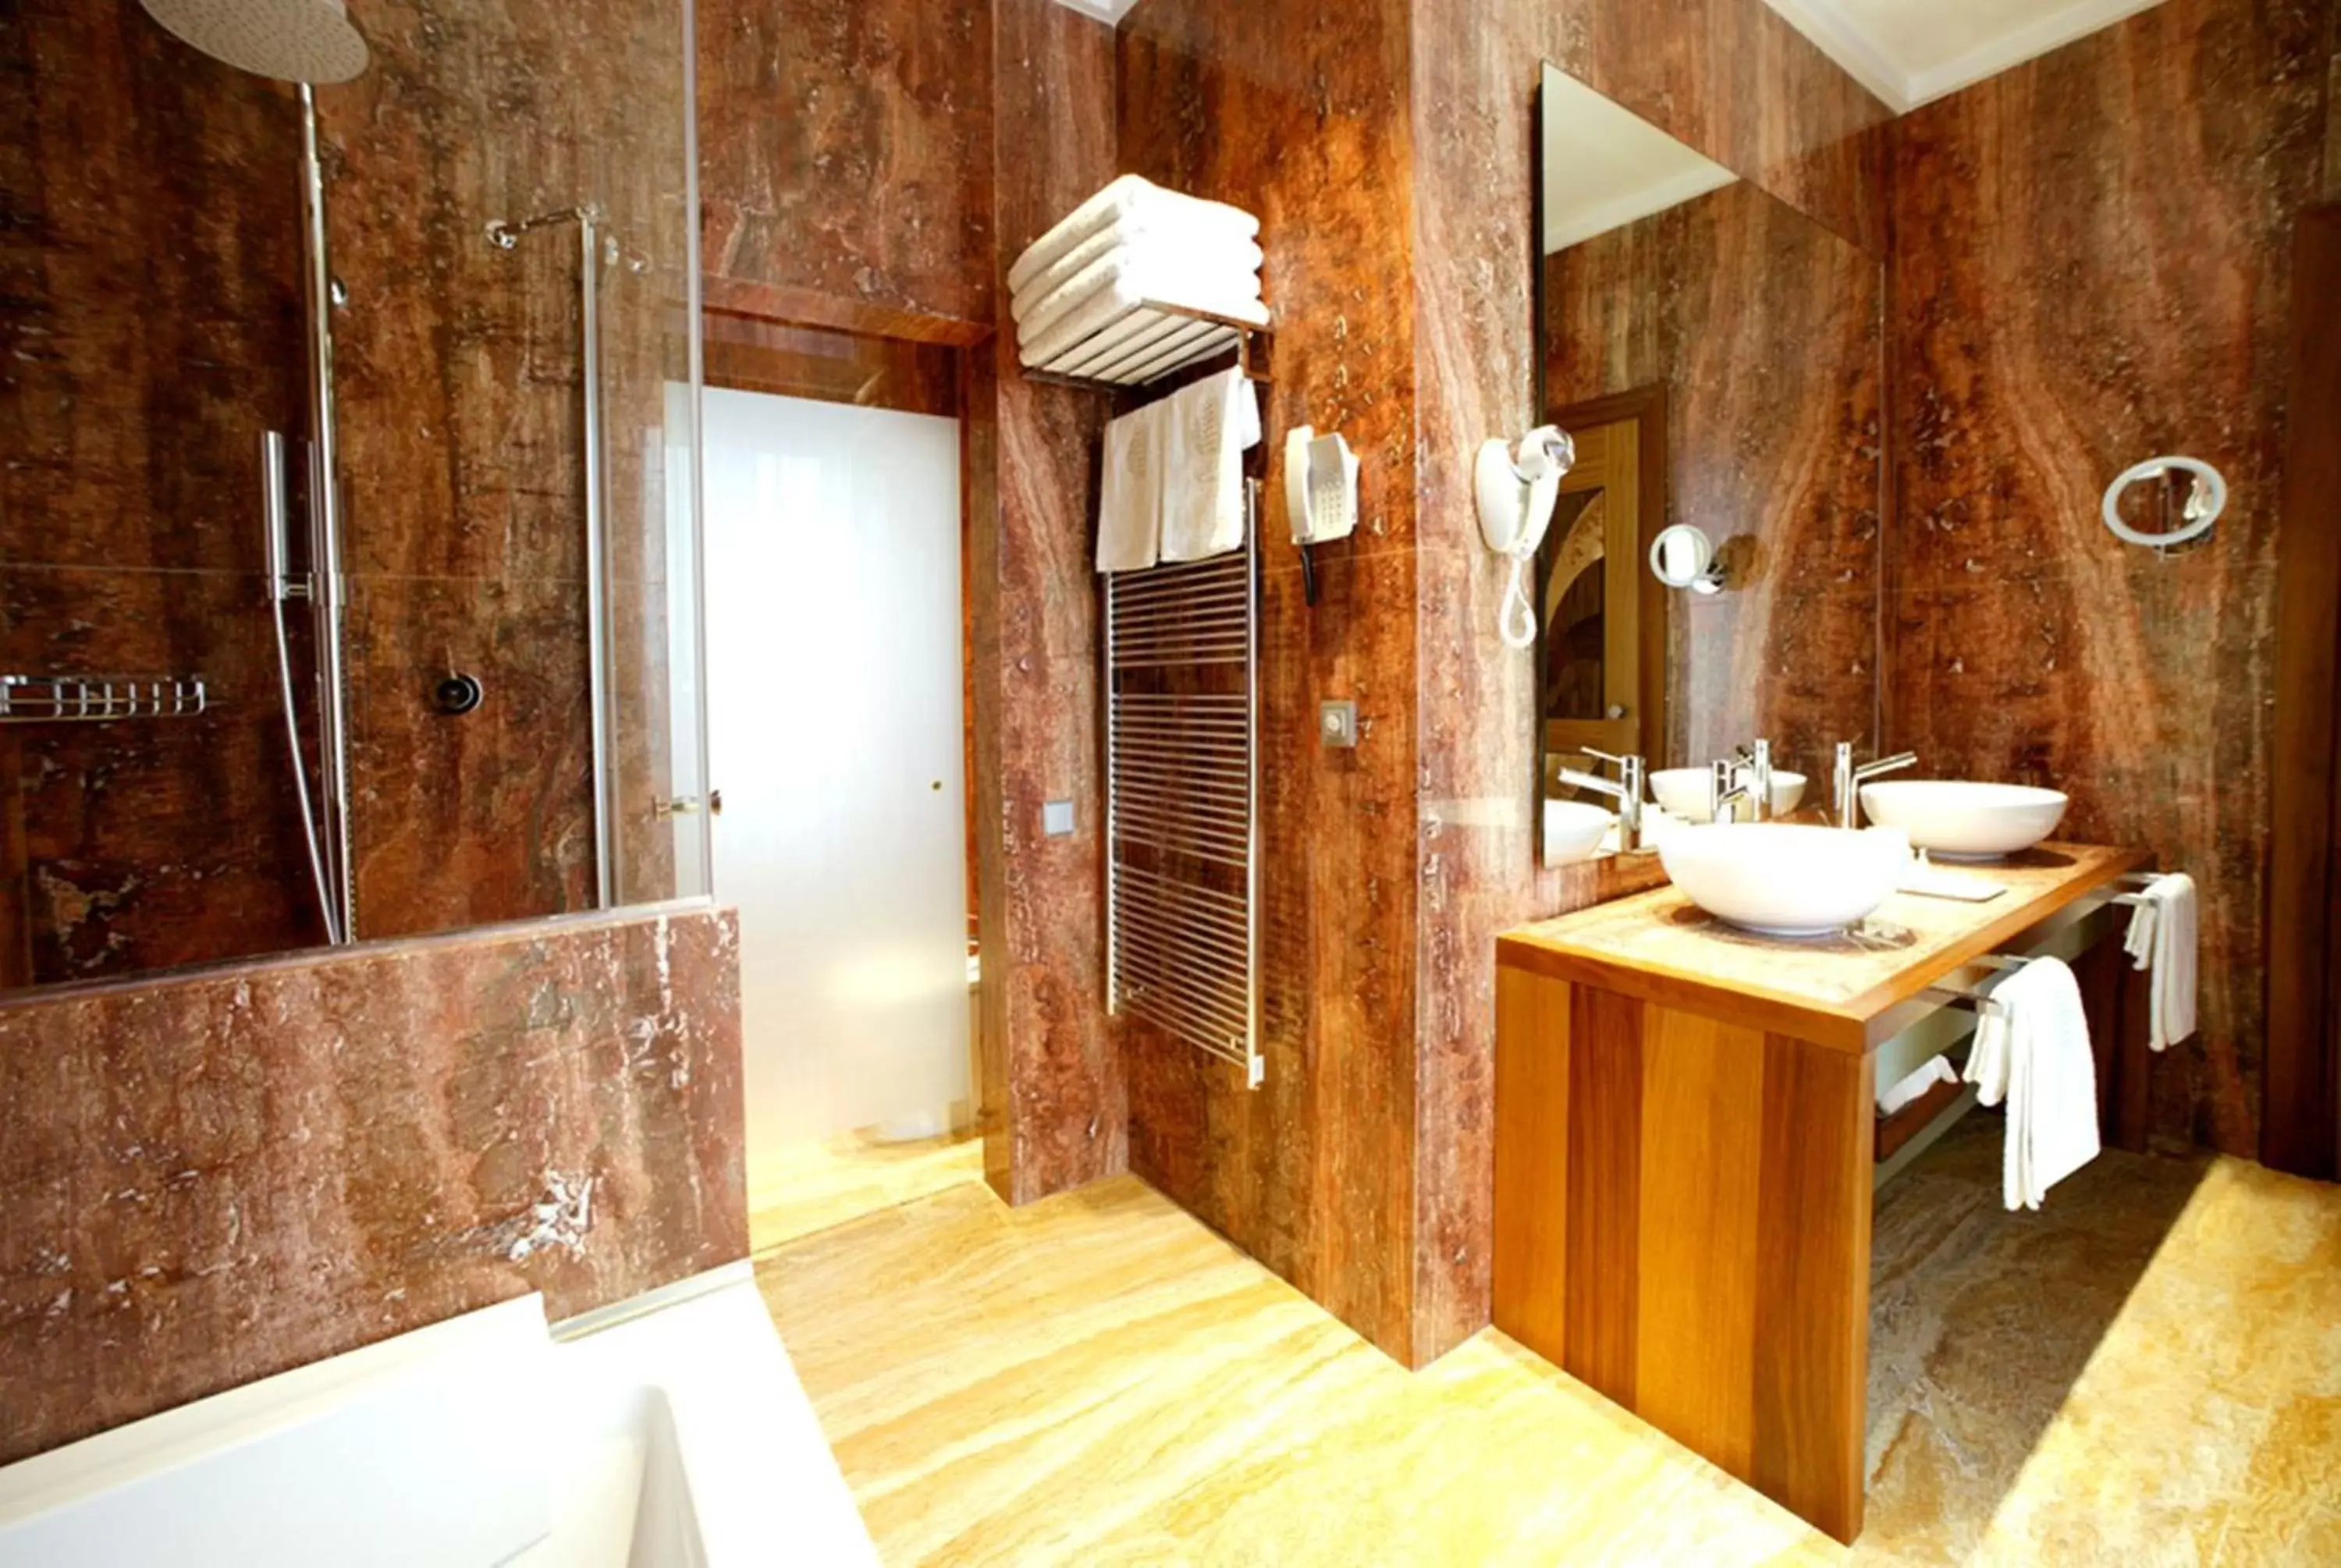 Shower, Bathroom in Mirador de Dalt Vila-Relais & Chateaux